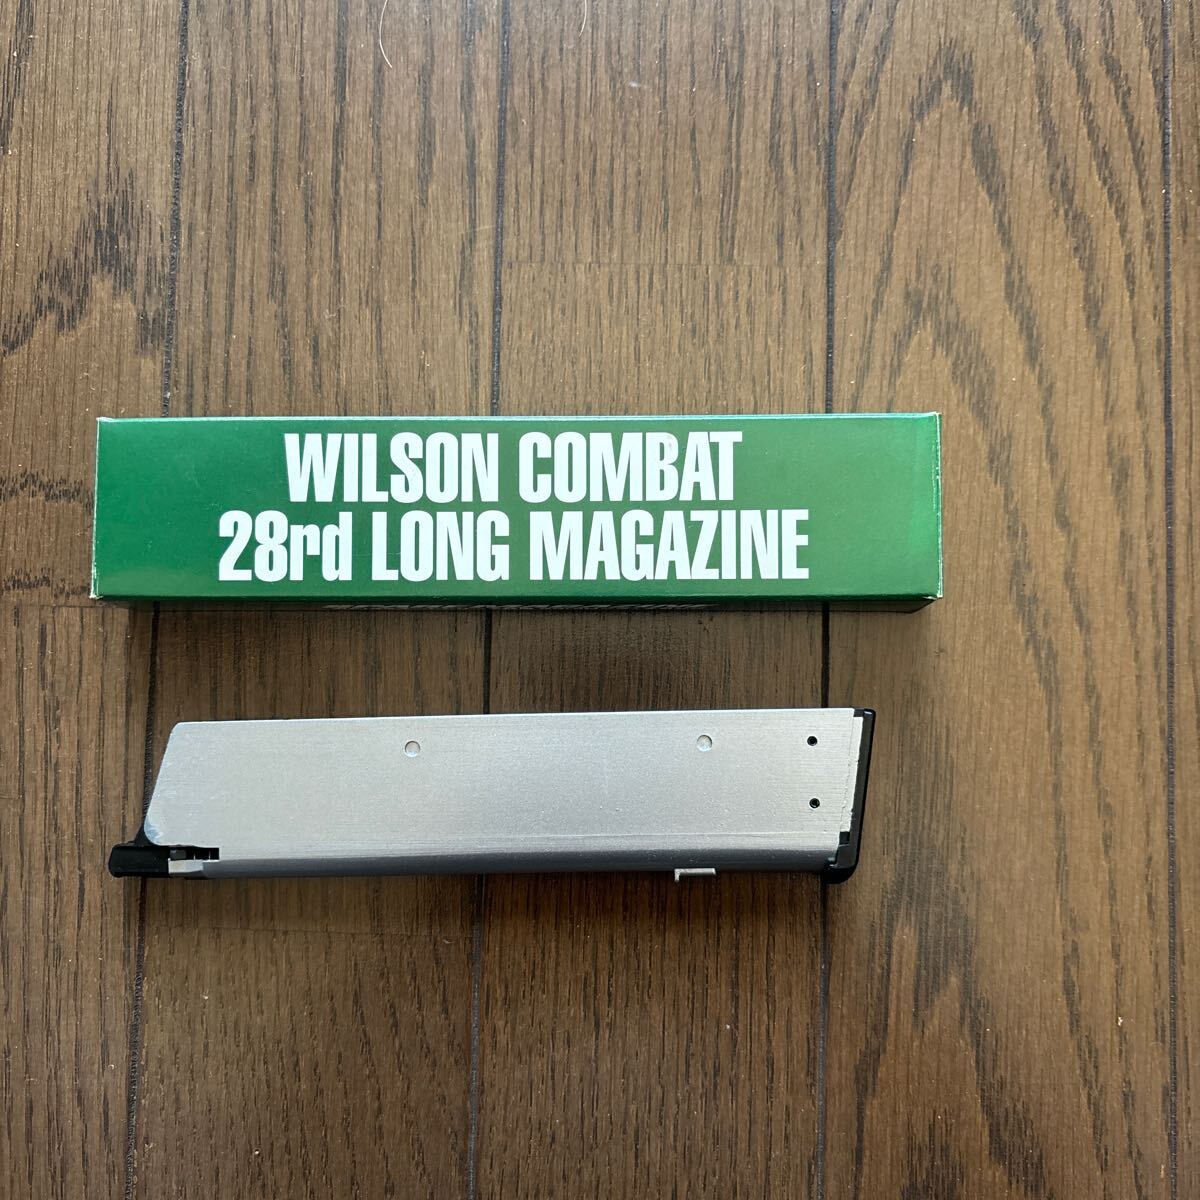 WA WIKSON COMBAT 28rd LONG MAGAZINE ウエスタンアームズ ロングマガジン の画像1